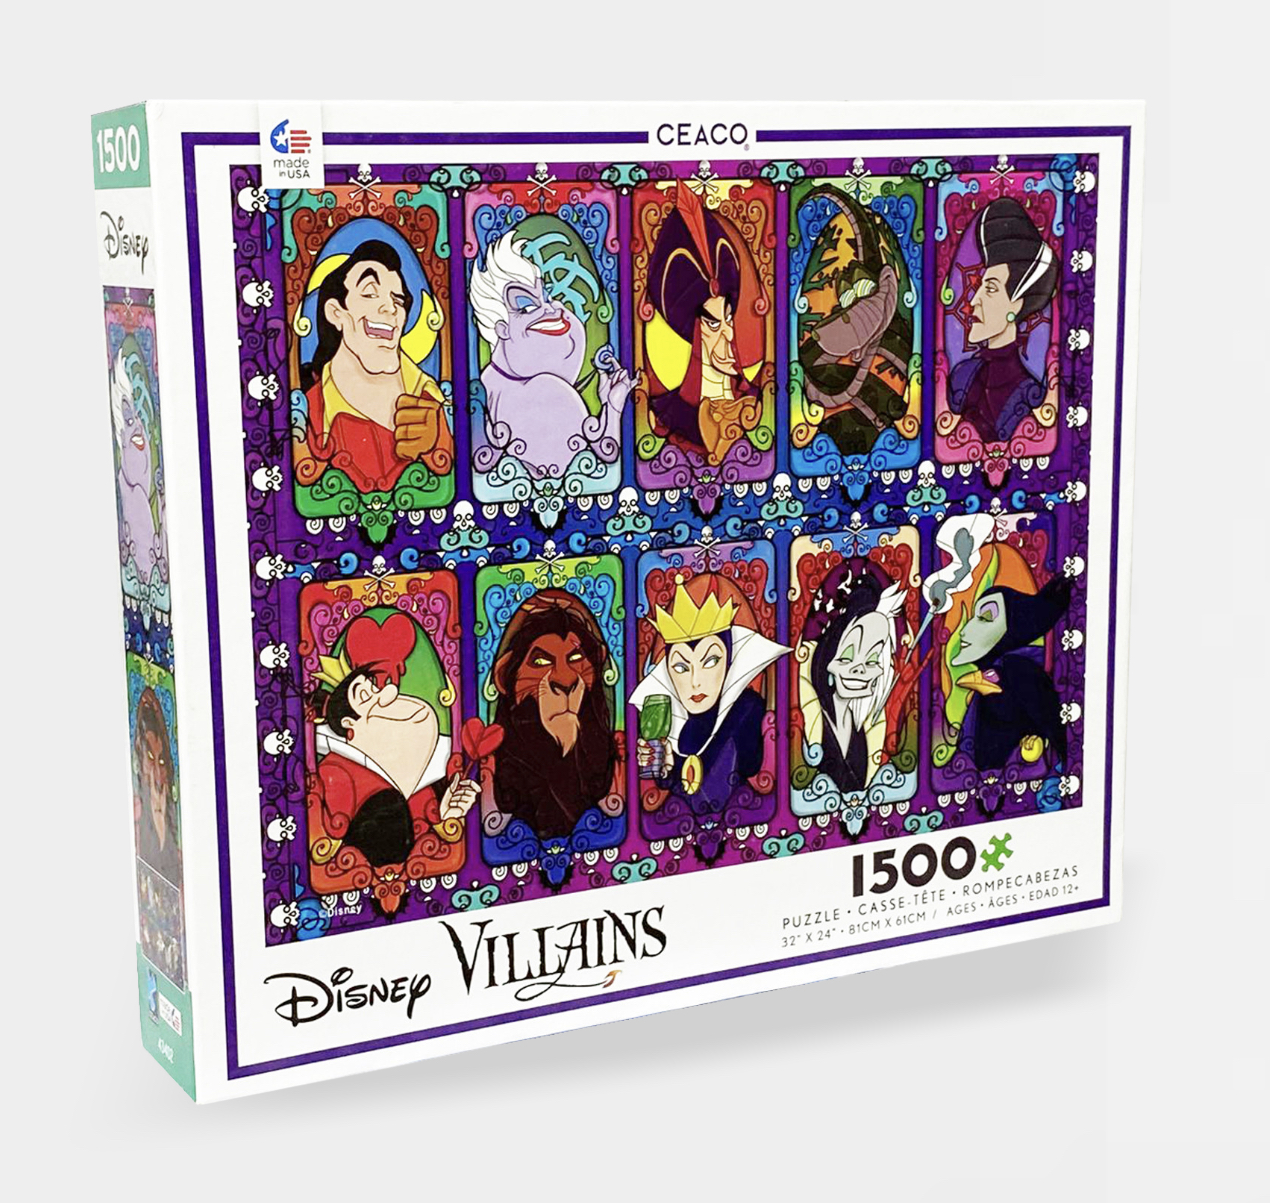 Disney Villians 1500 Piece Jigsaw Puzzle - Size 81cm*61cm